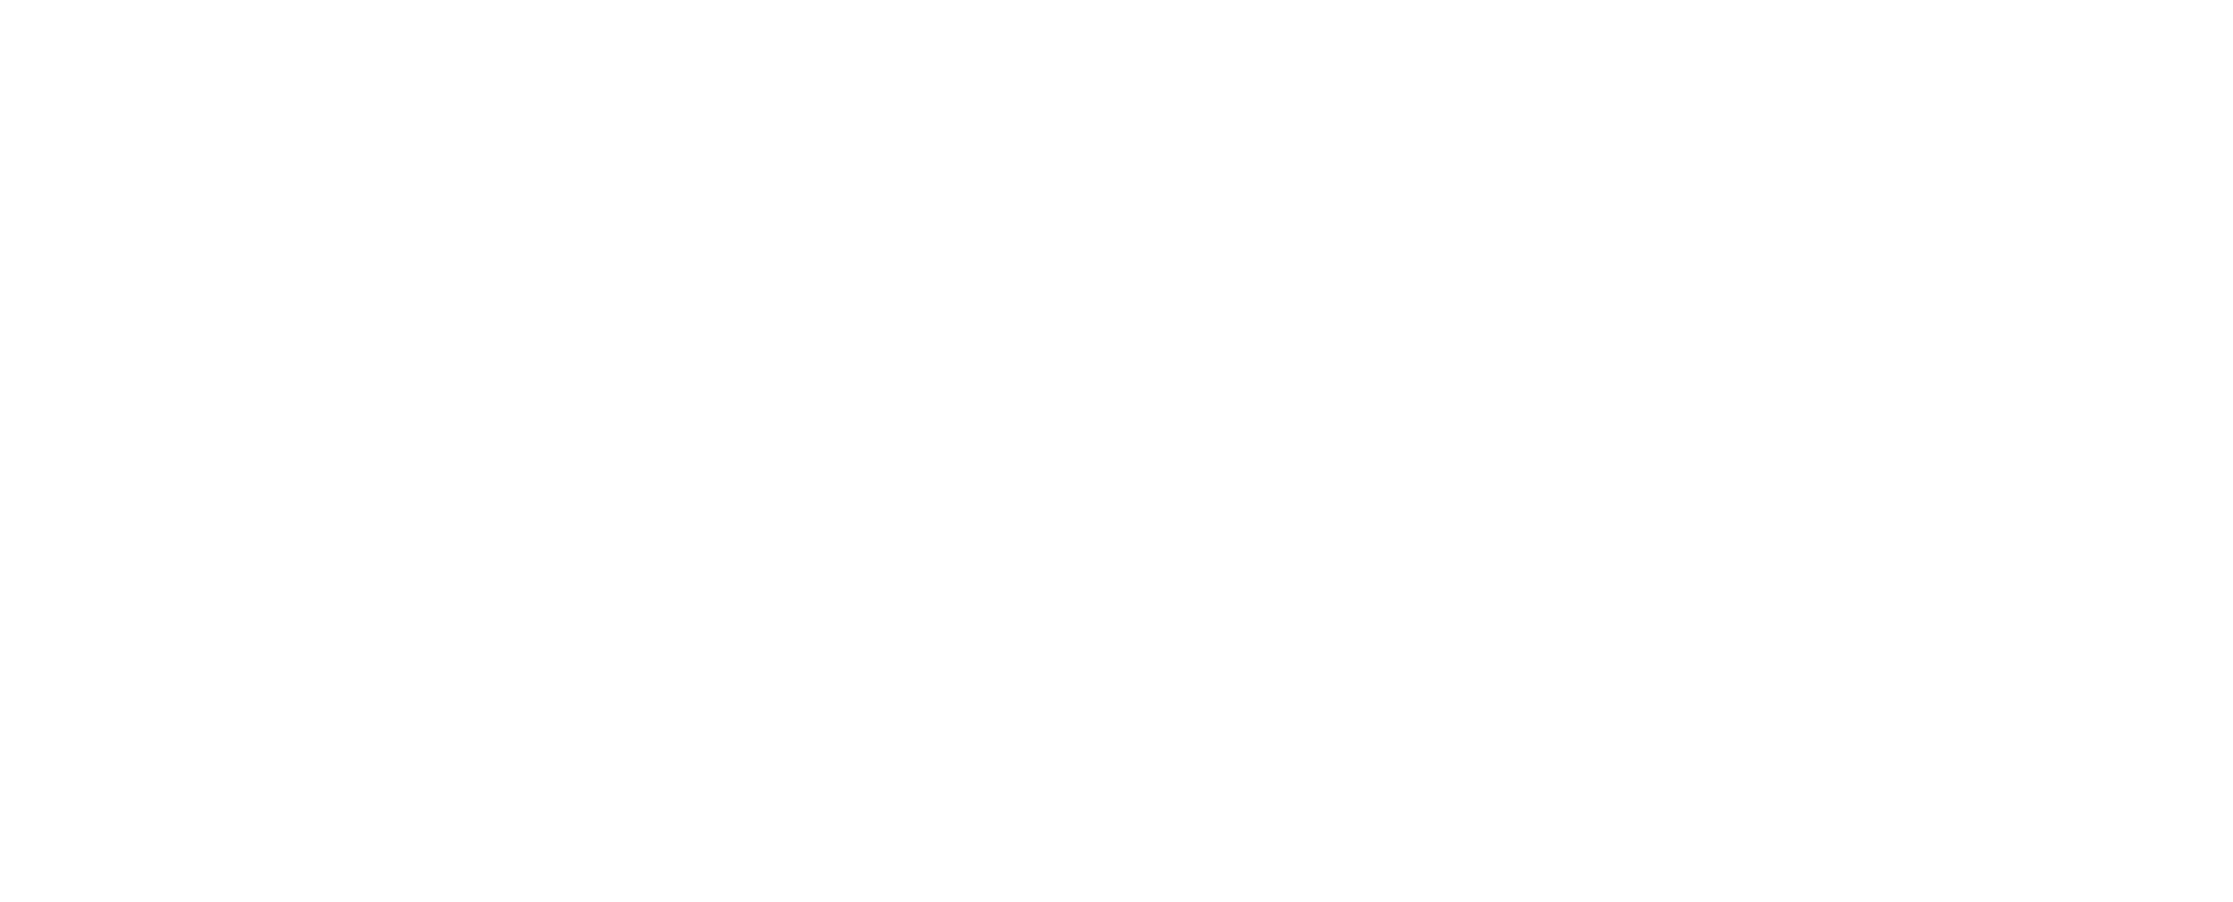 logo Mob'île Esthetic blanc